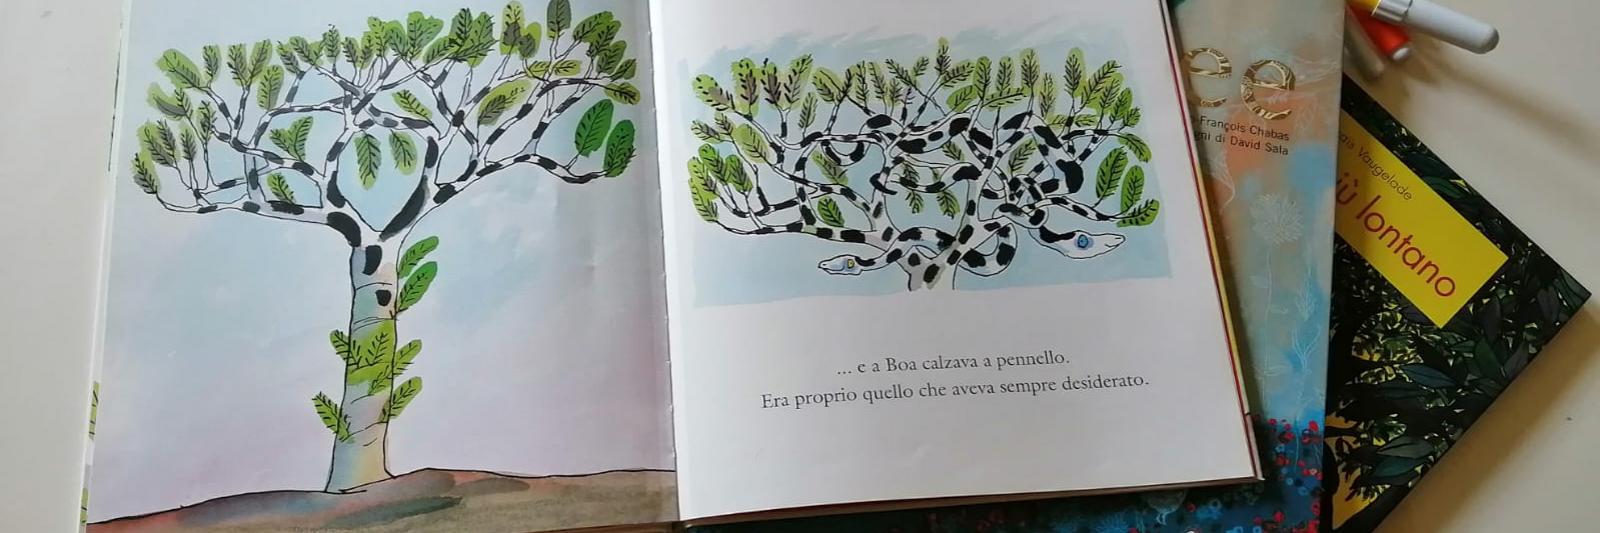 Libro illustrato aperto sul tavolo (c'è disegnato un albero). Accanto altri libri e pennarelli colorati.